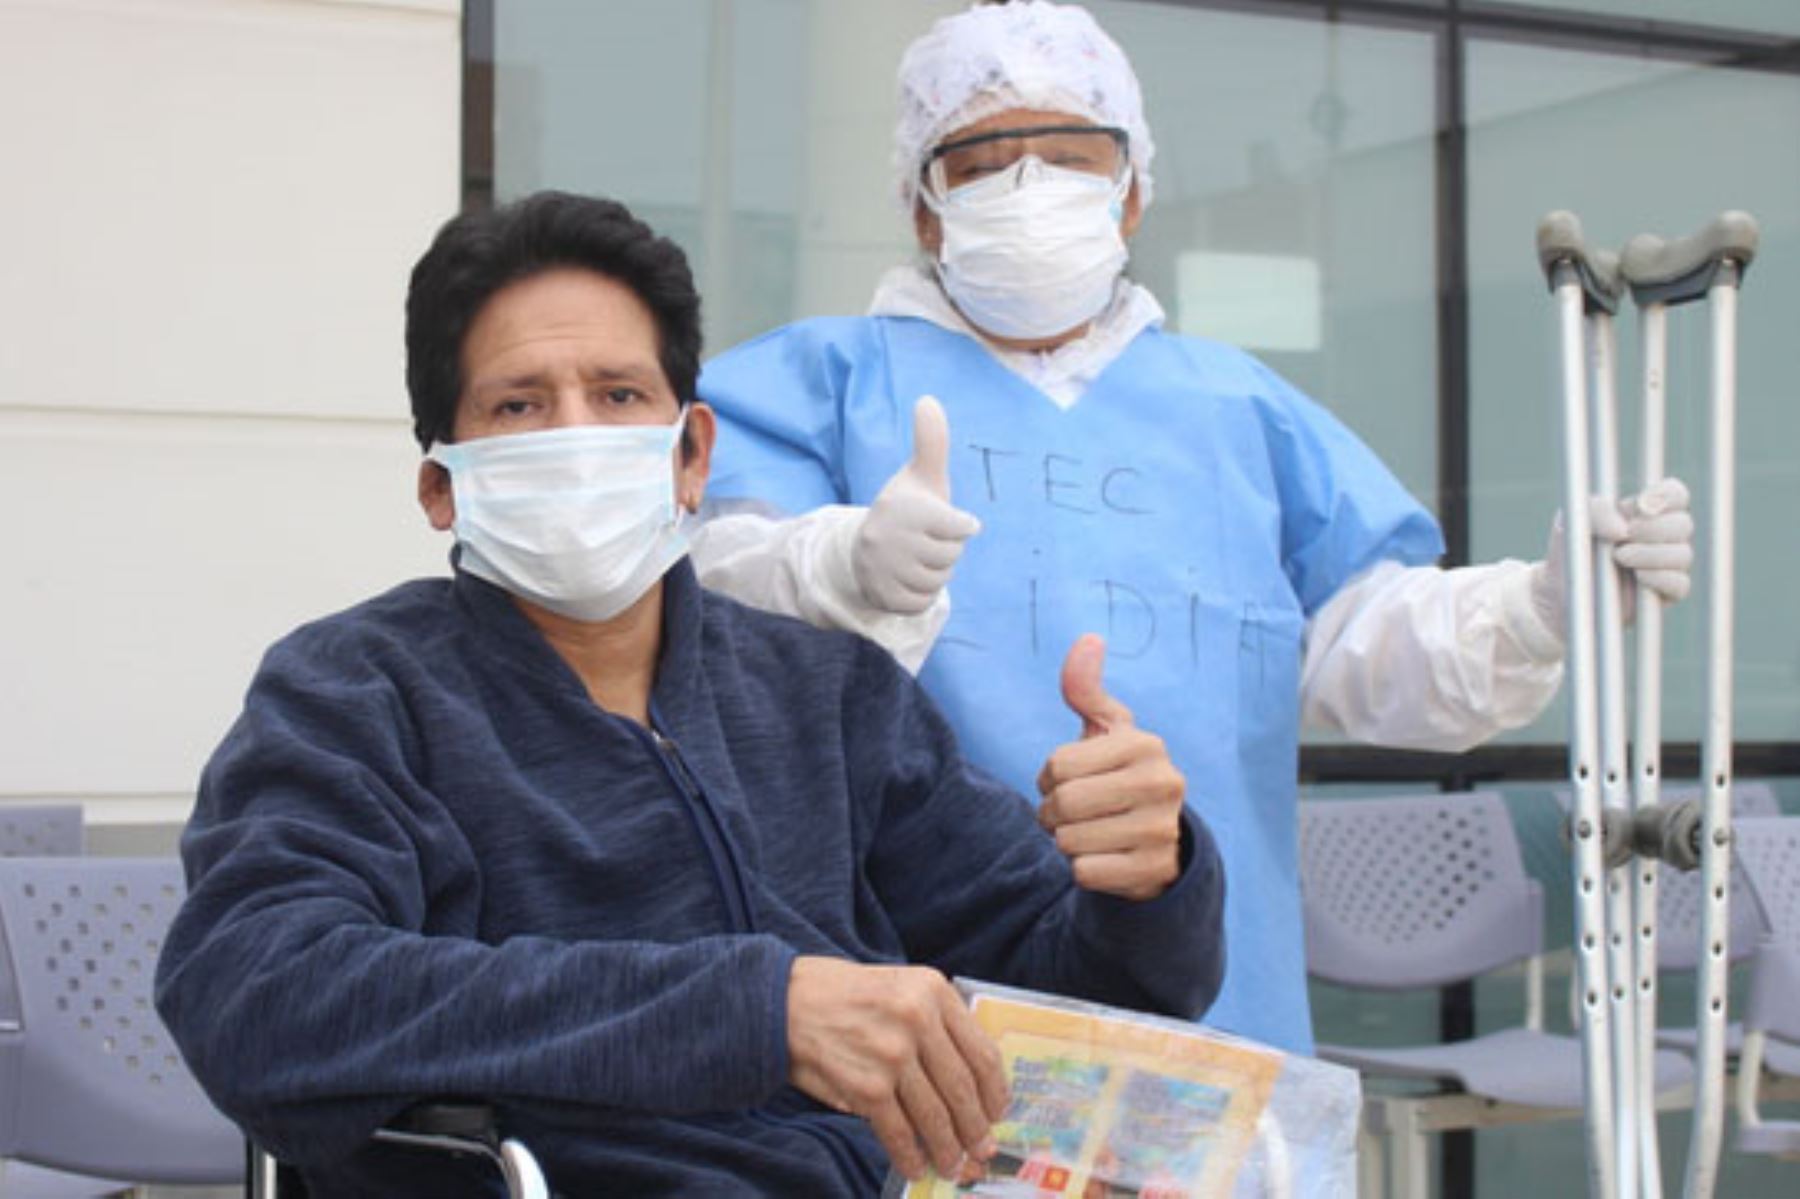 Juan superó el covid en el Hospital Emergencias Ate Vitare a pesar de ser diabético y tener afectado el 55 por ciento de su pulmón.